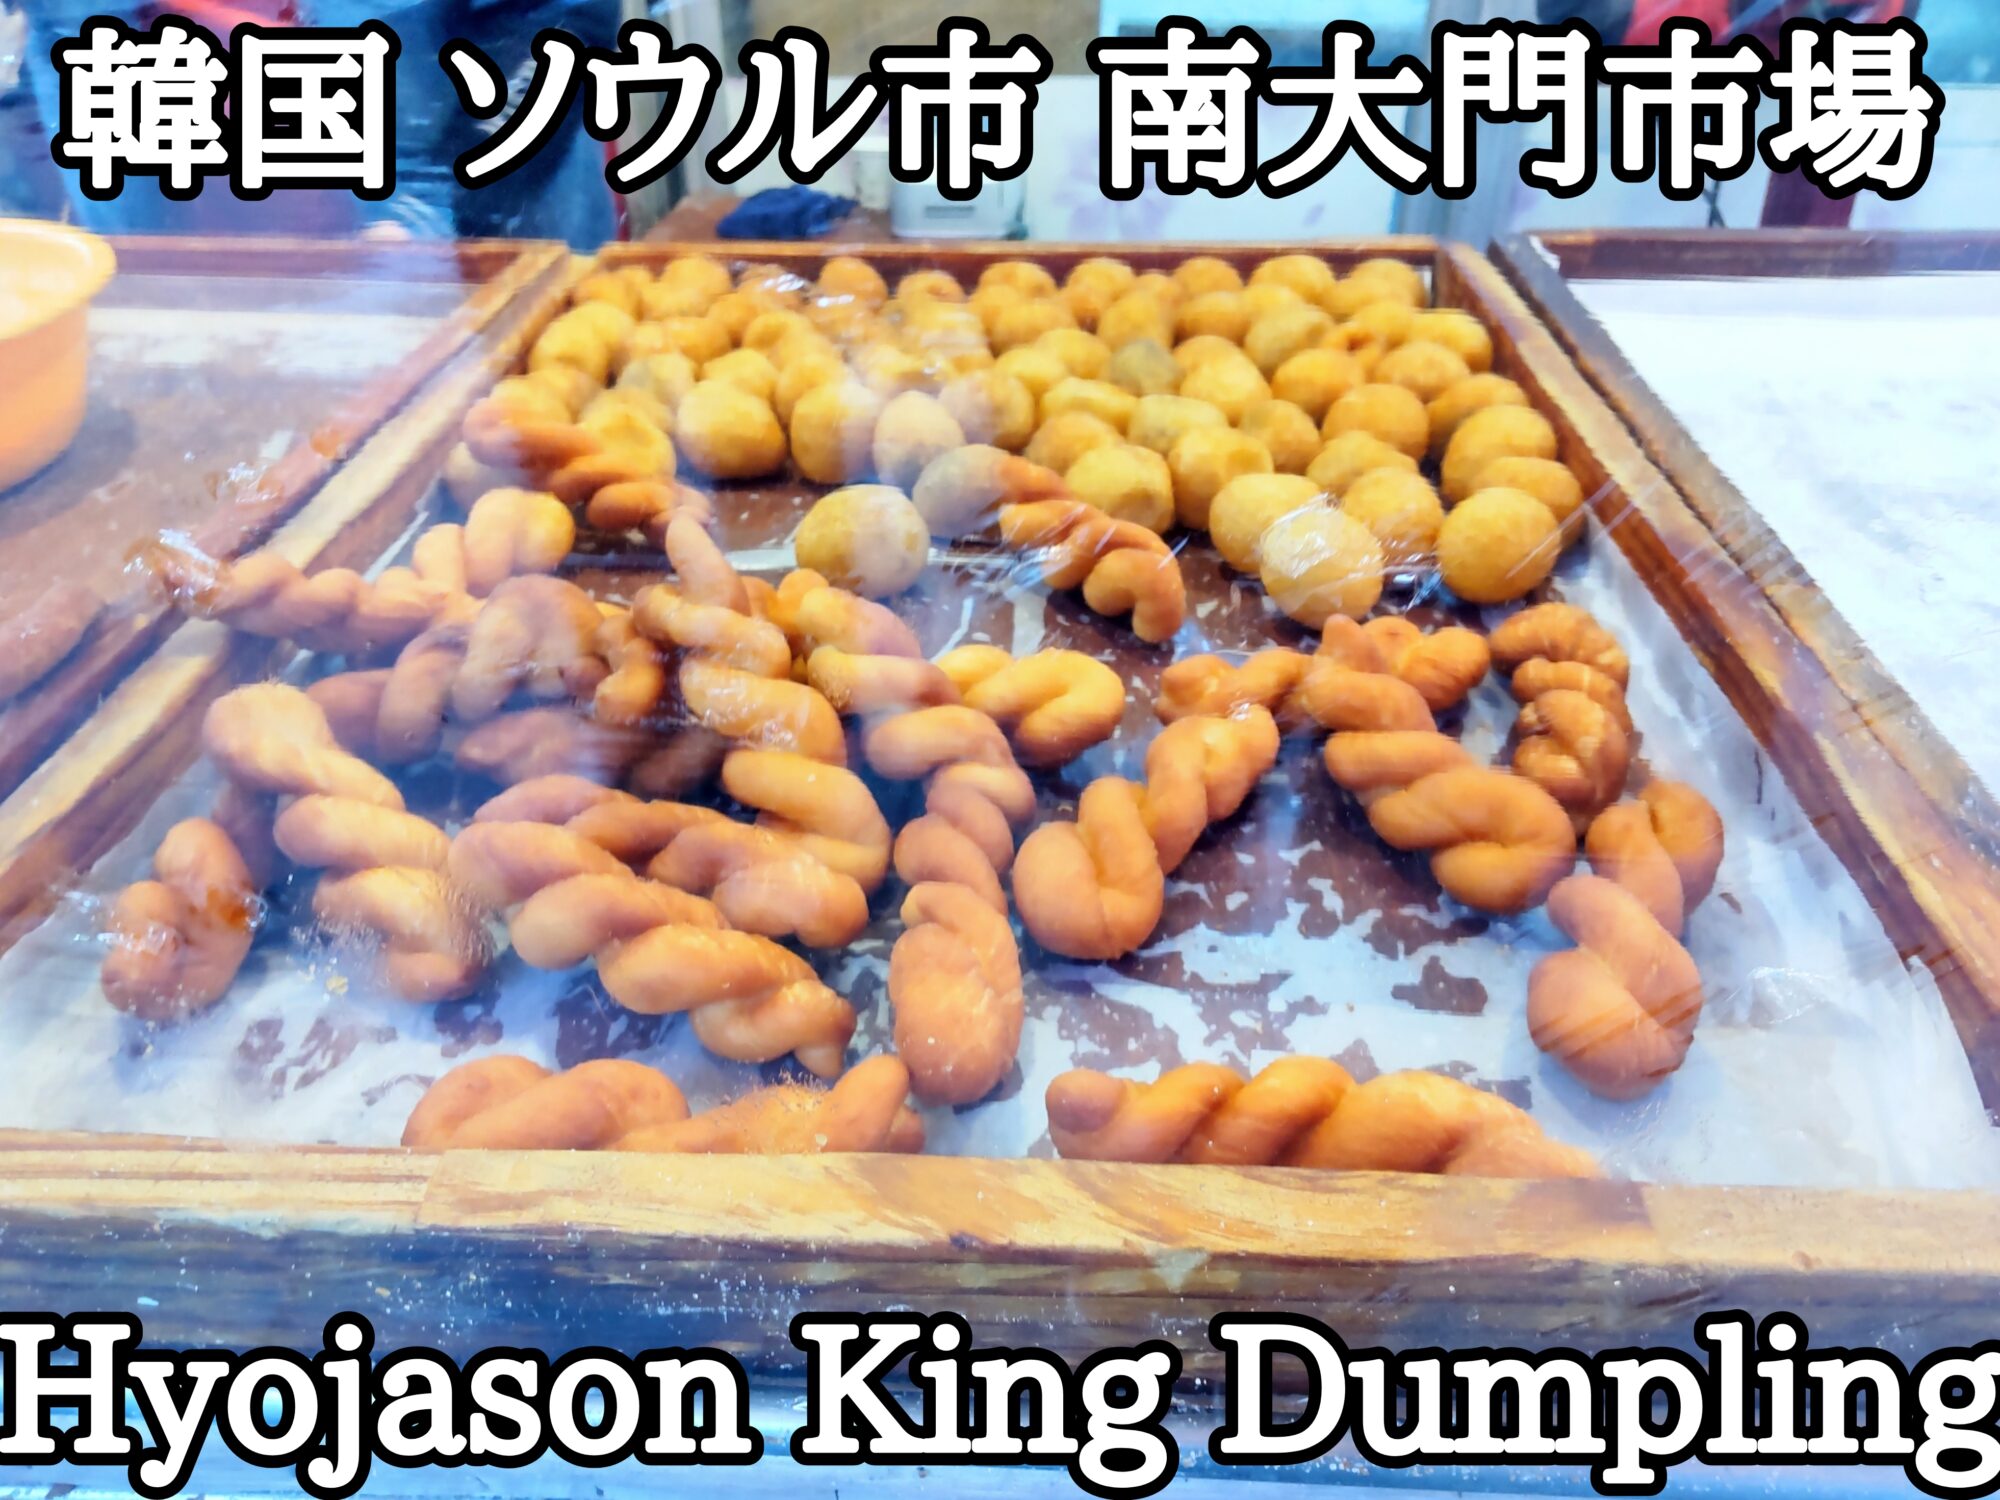 【韓国】【ソウル市】【中区】「南大門市場」「Hyojason King Dumpling」餃子屋さんの旨すぎる揚げドーナツ達